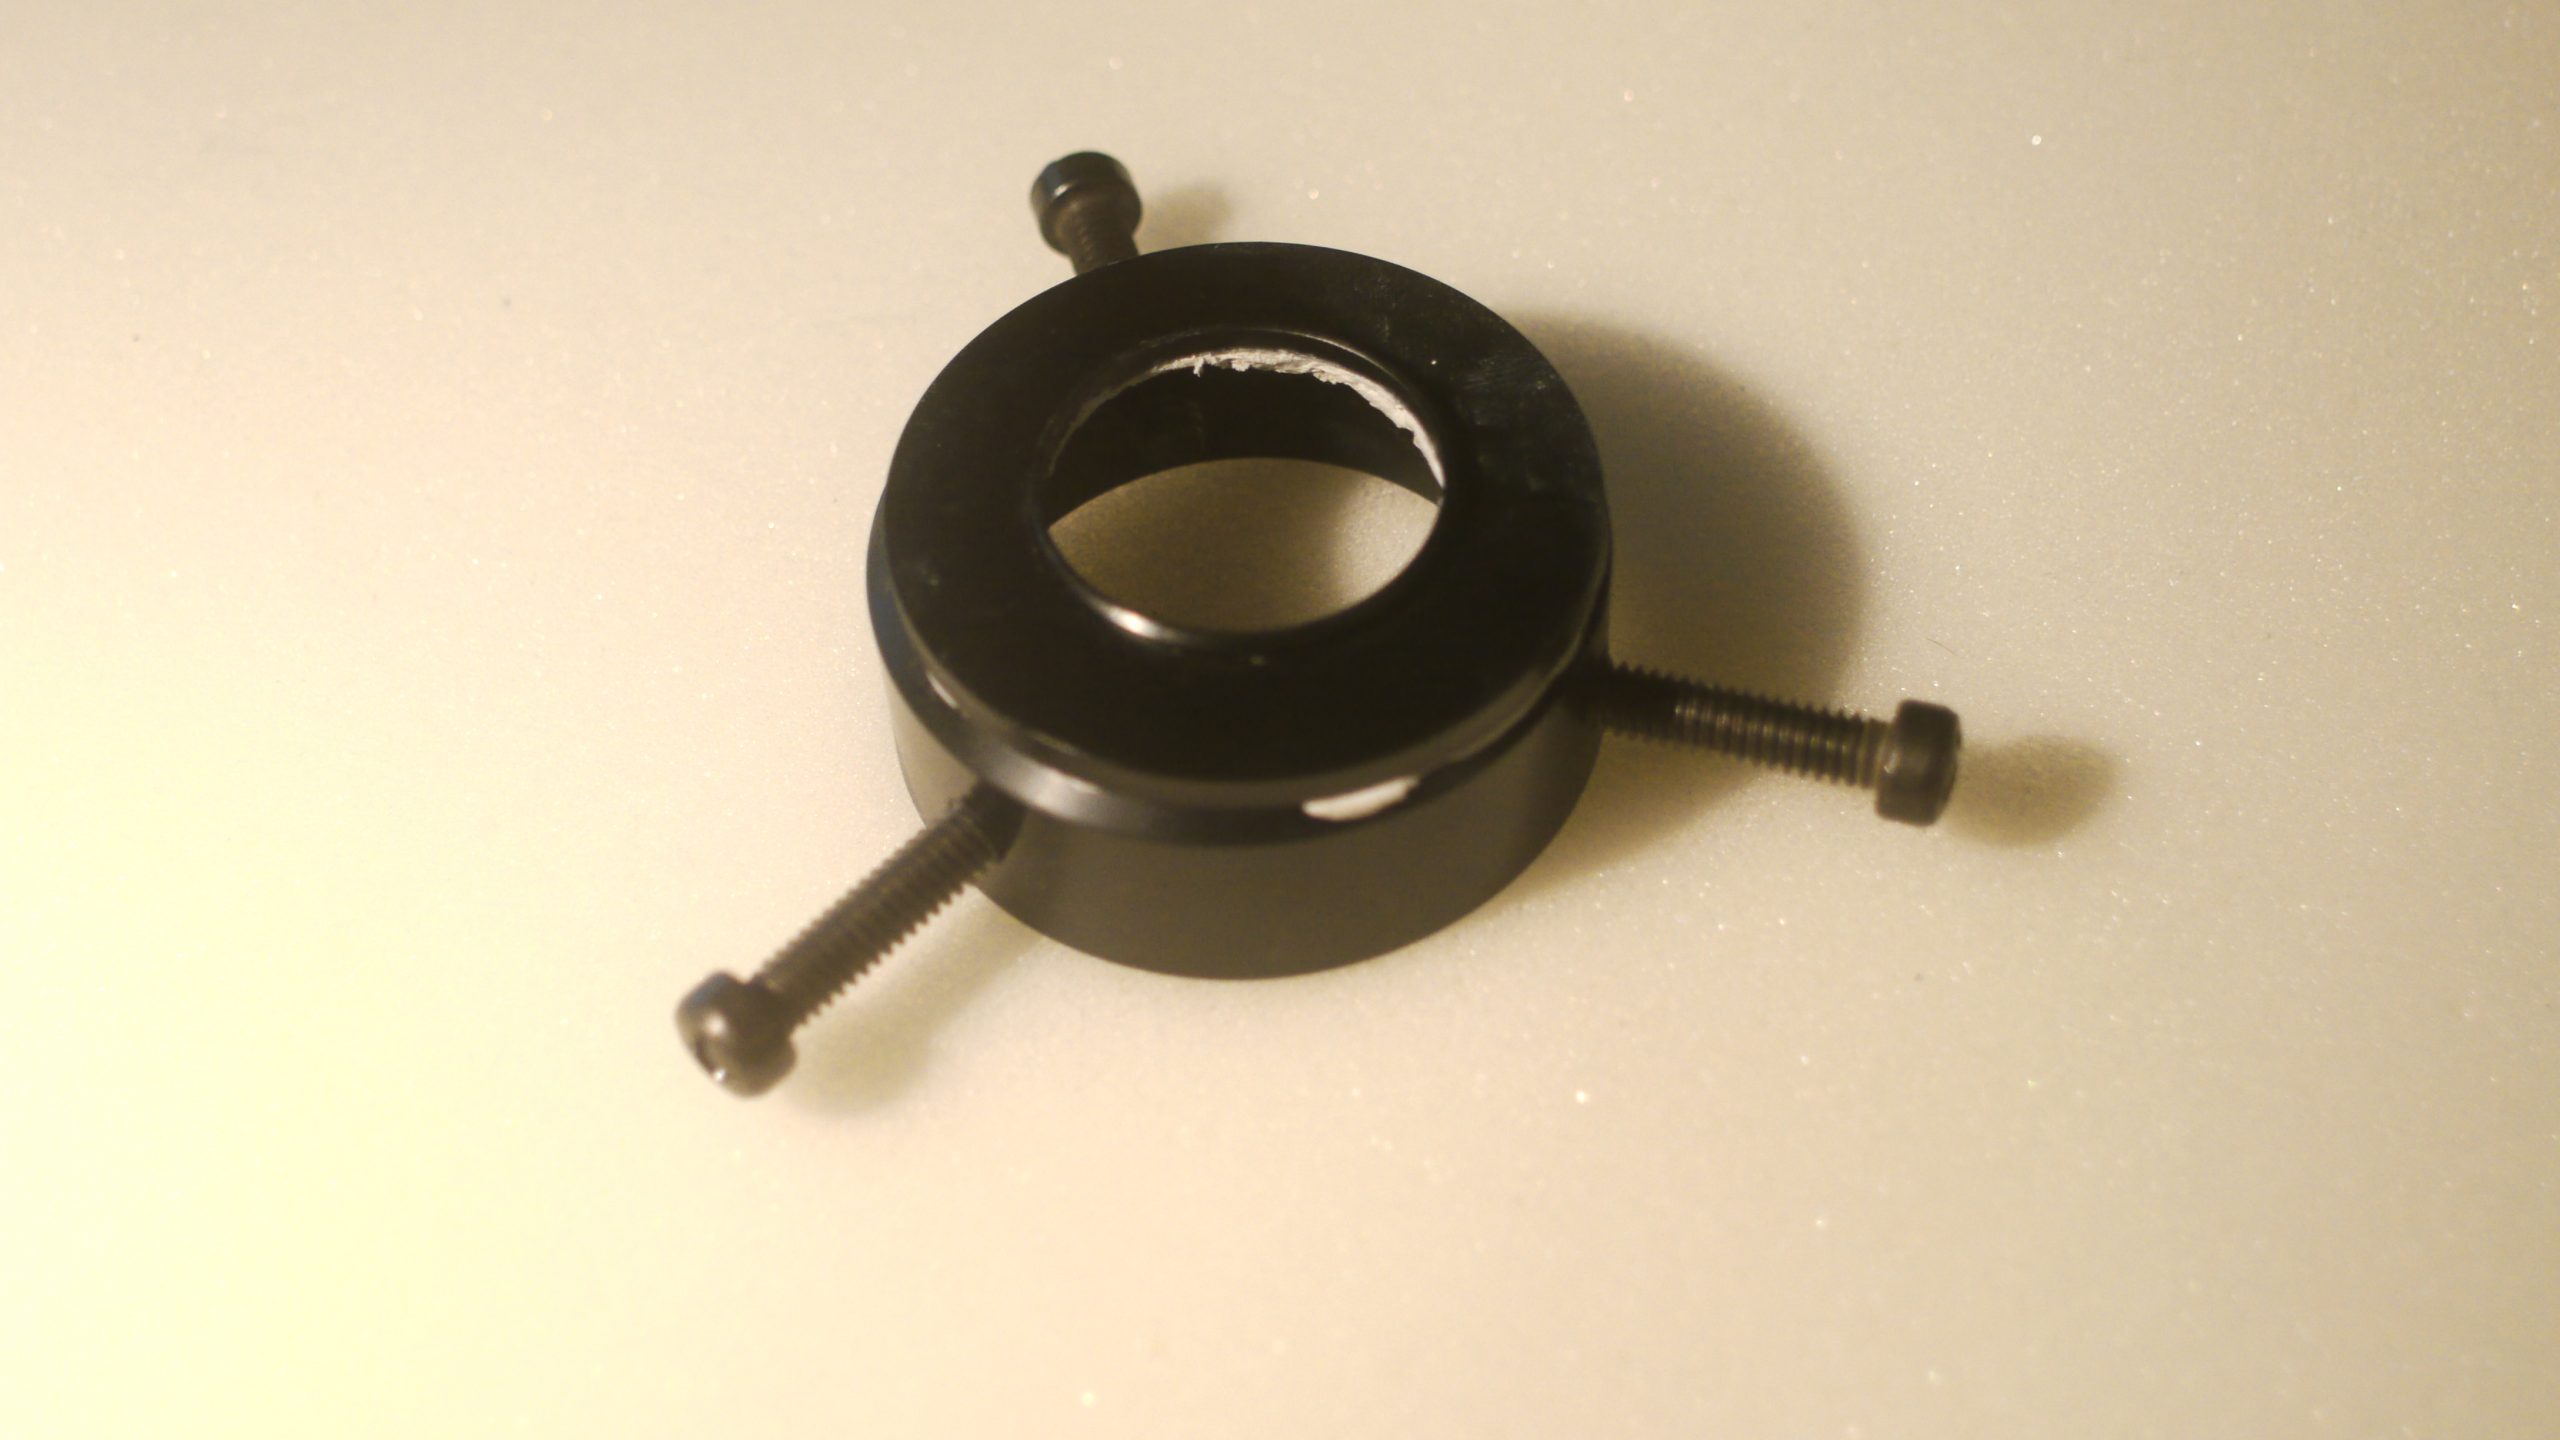 DIY lens clamp